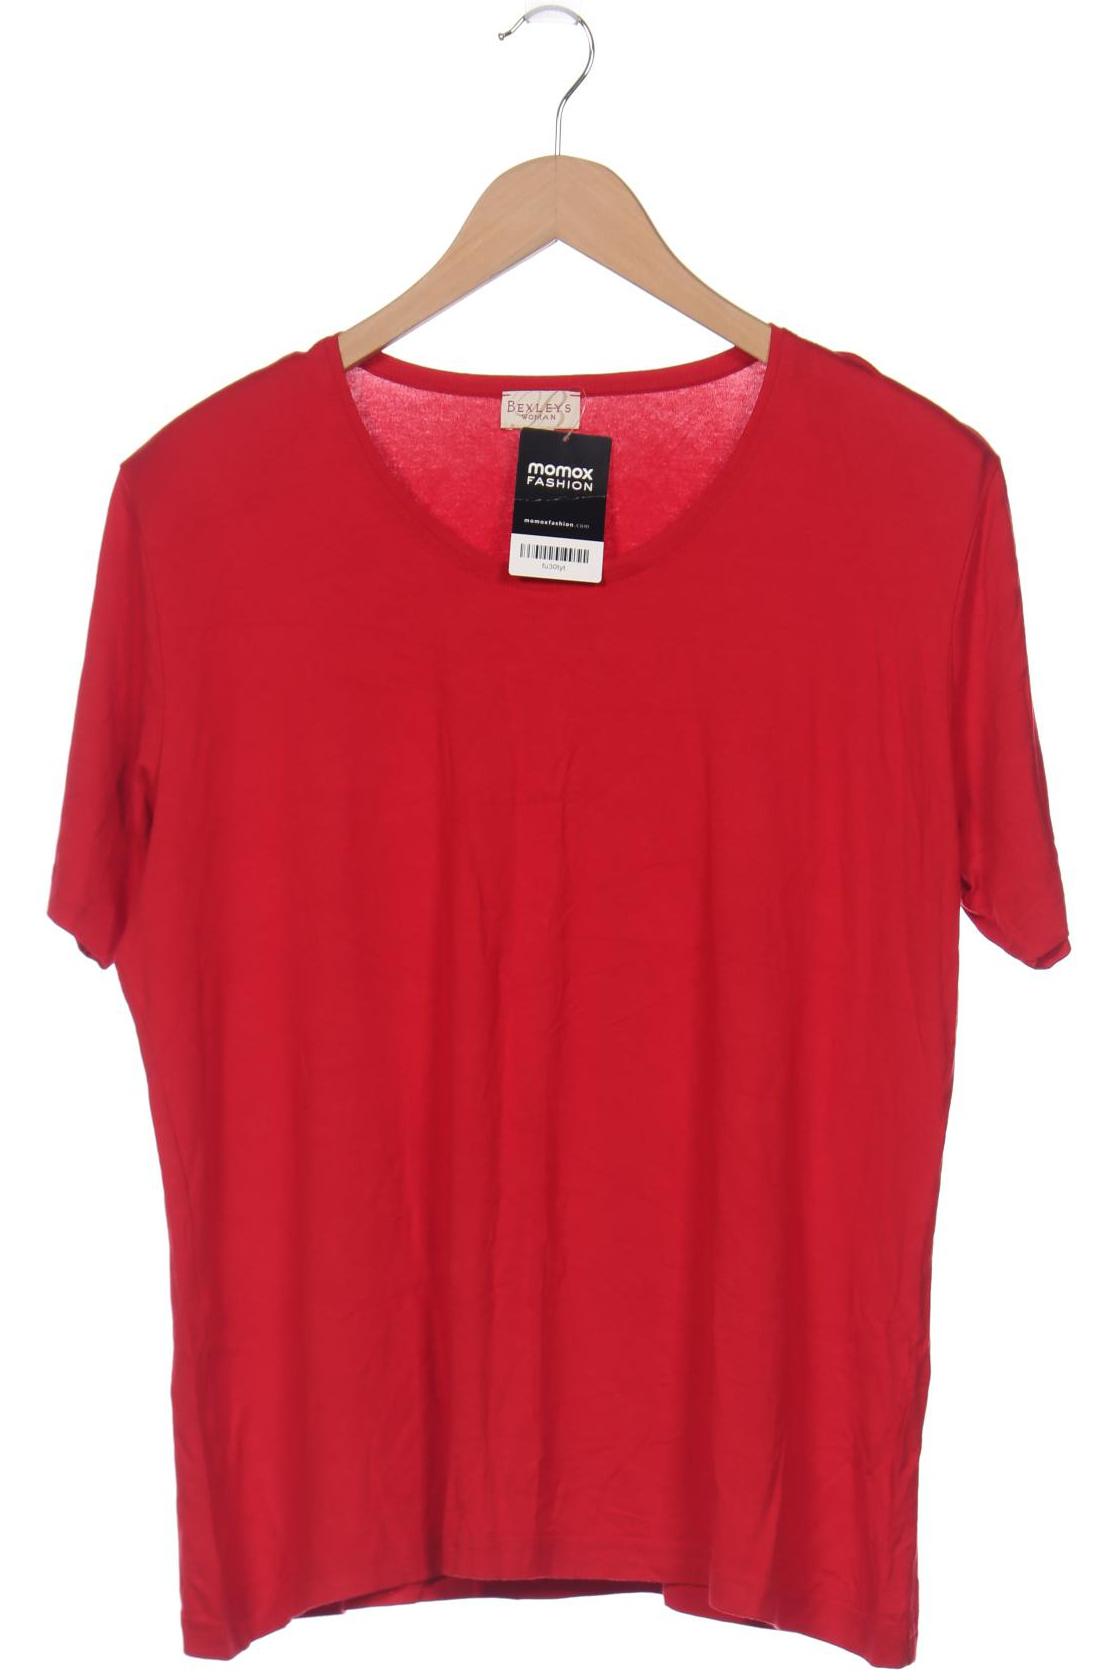 Bexleys Damen T-Shirt, rot von Bexleys